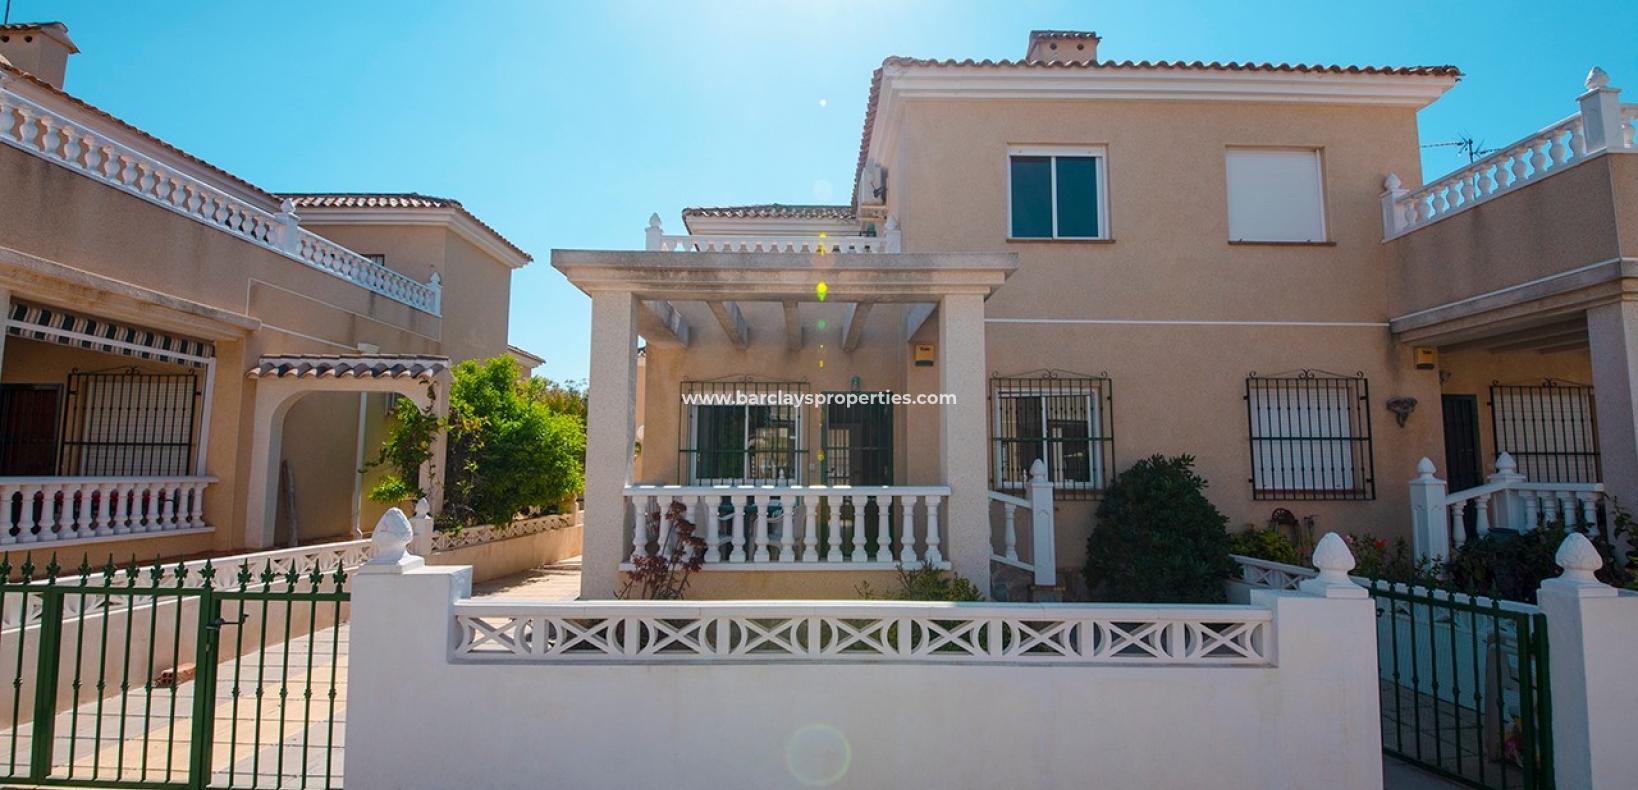 Haus - Doppelhaushälfte zum Verkauf in La Marina Spanien